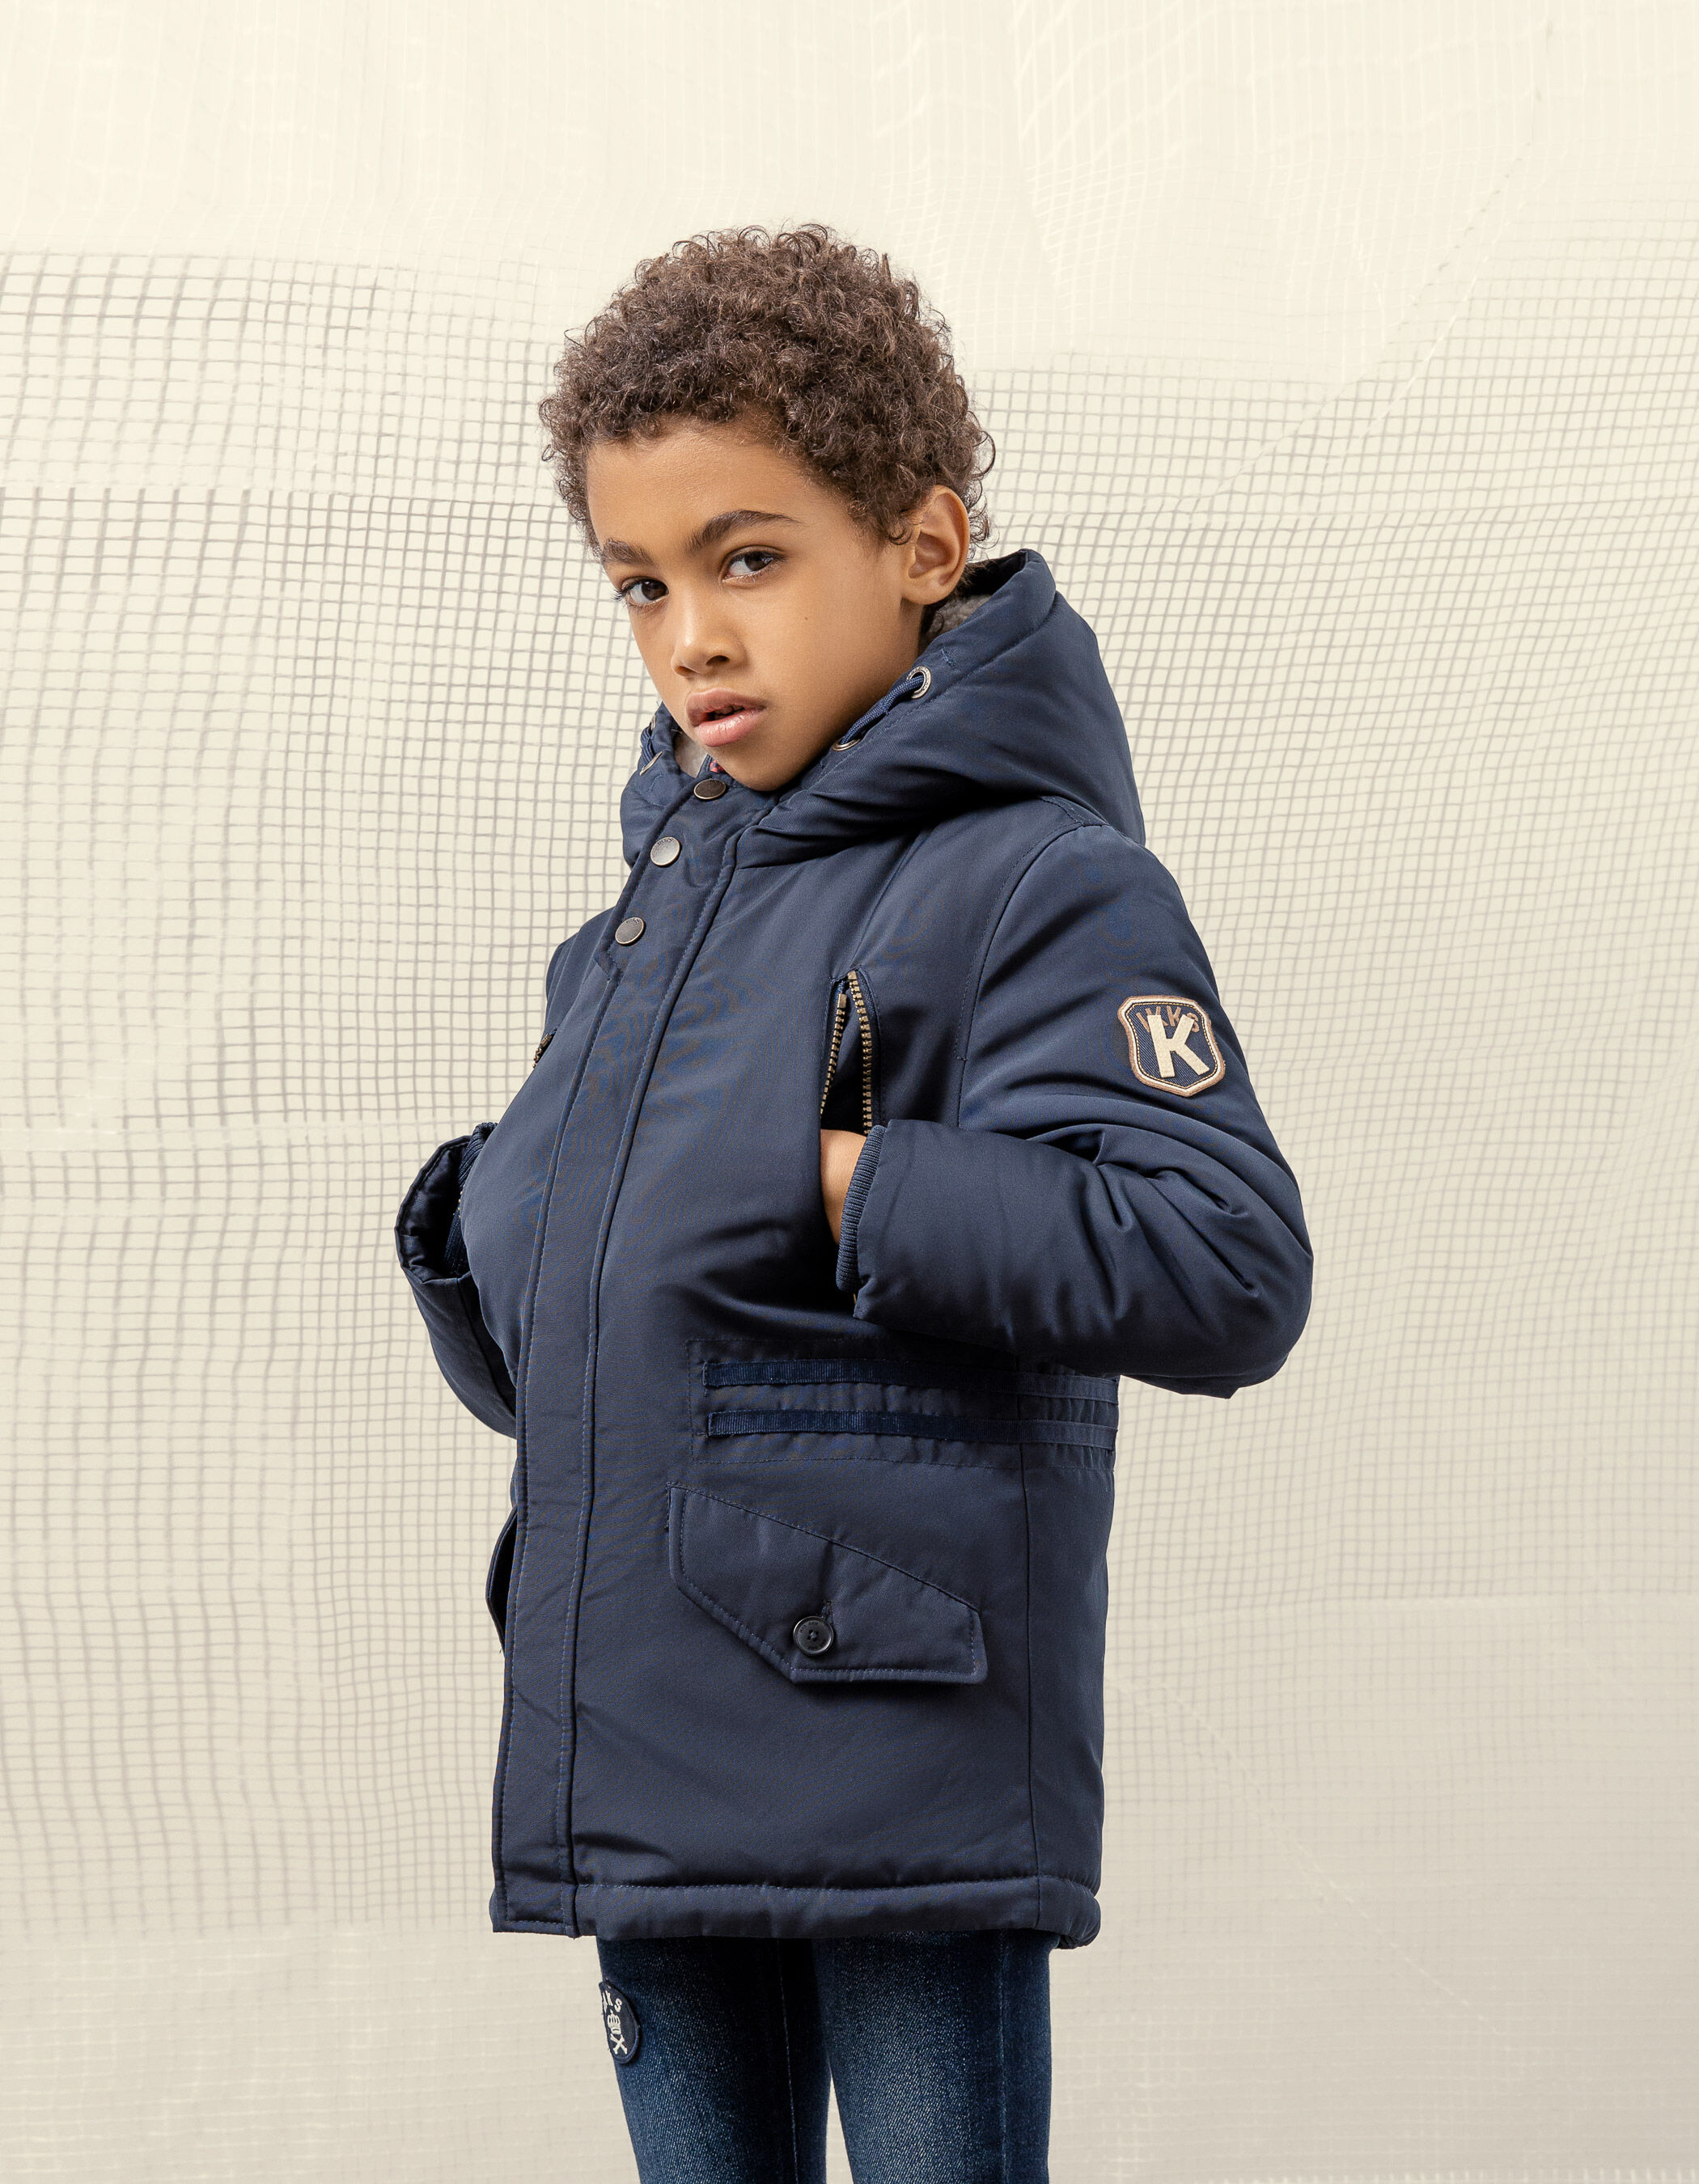 Kids Boys Ikks Clothing Ikks Kids Coats & Jackets Ikks Kids Coats Ikks Kids Coat IKKS 9-10 years blue Coats Ikks Kids 